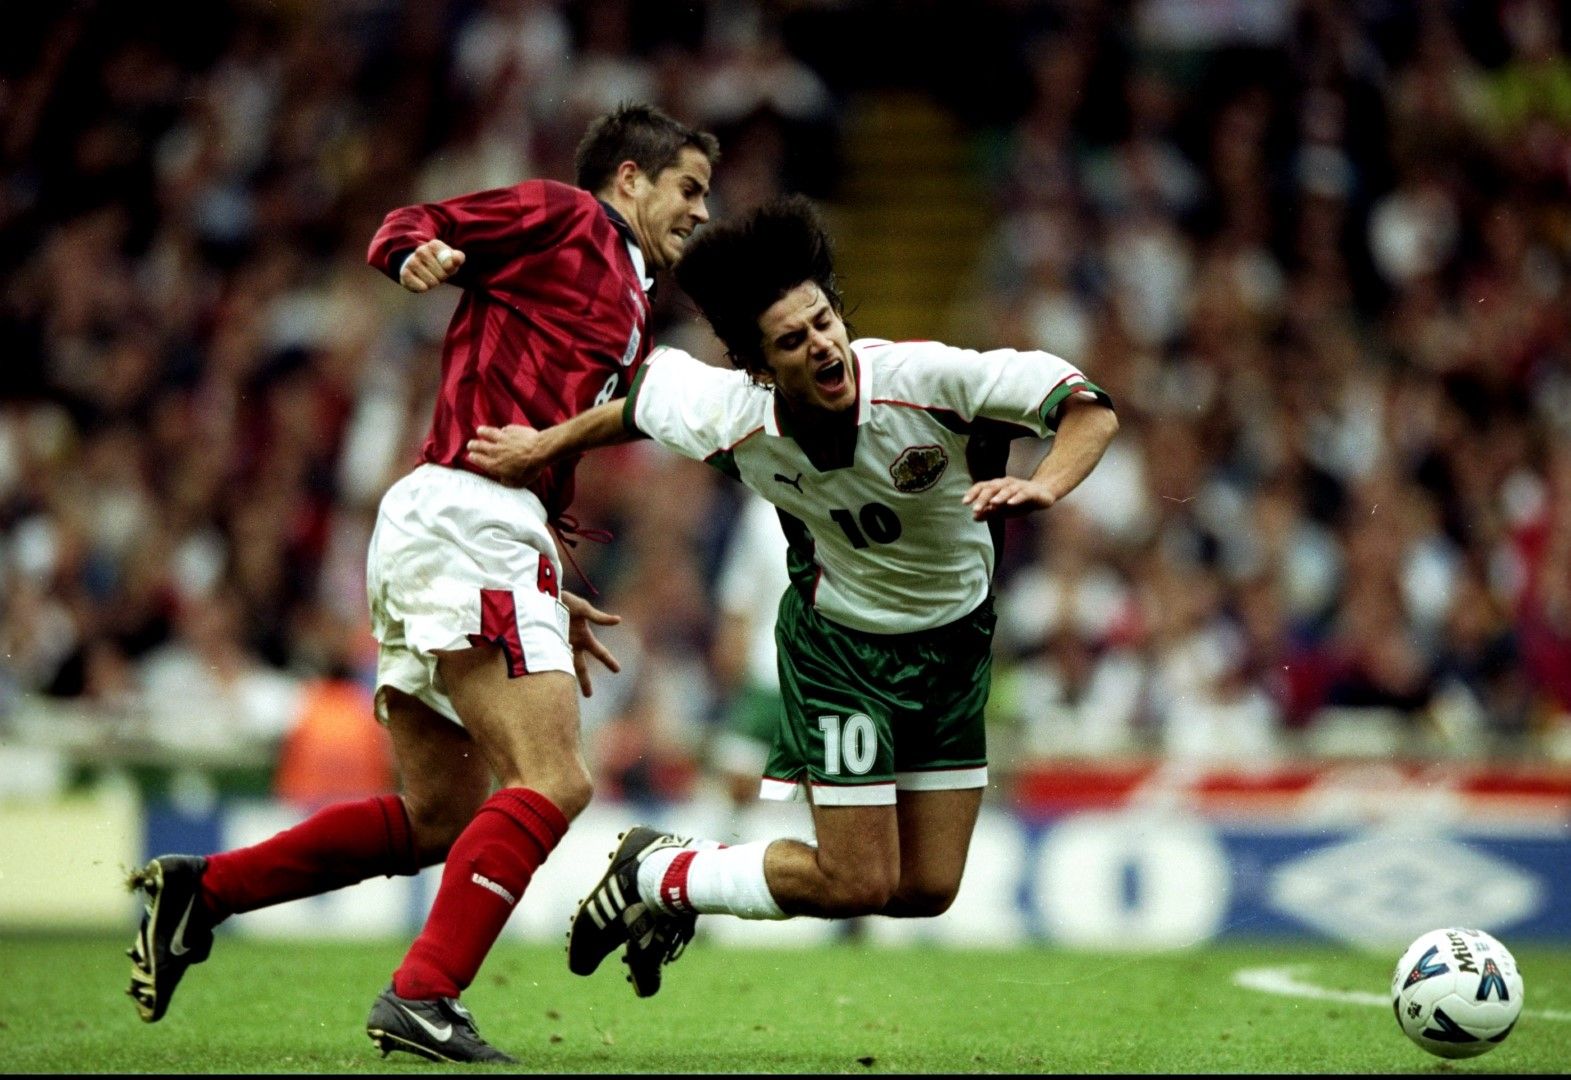 1998 г., 0:0 на "Уембли" - Джейми Реднап е спрял с нарушение Милен Петков в европейската квалификация.